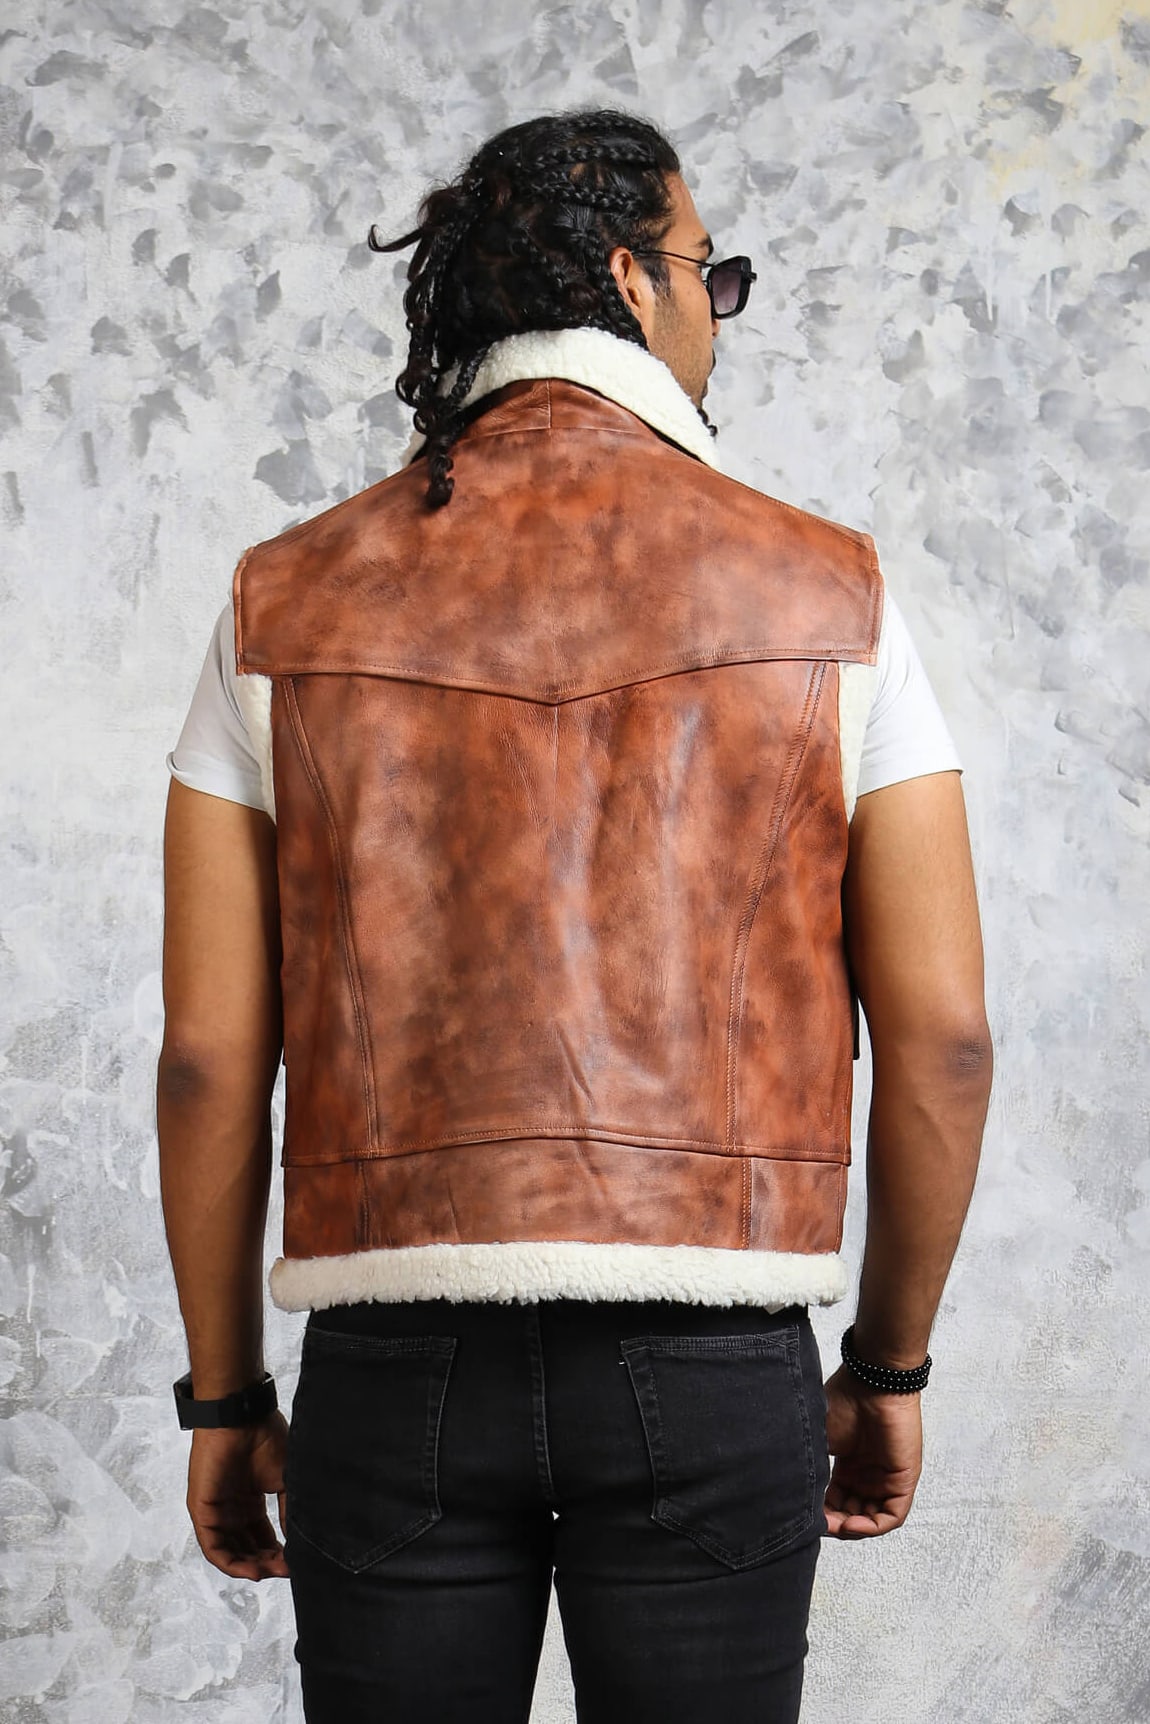 Men's Brown Leather Vests in Vintage Fashion